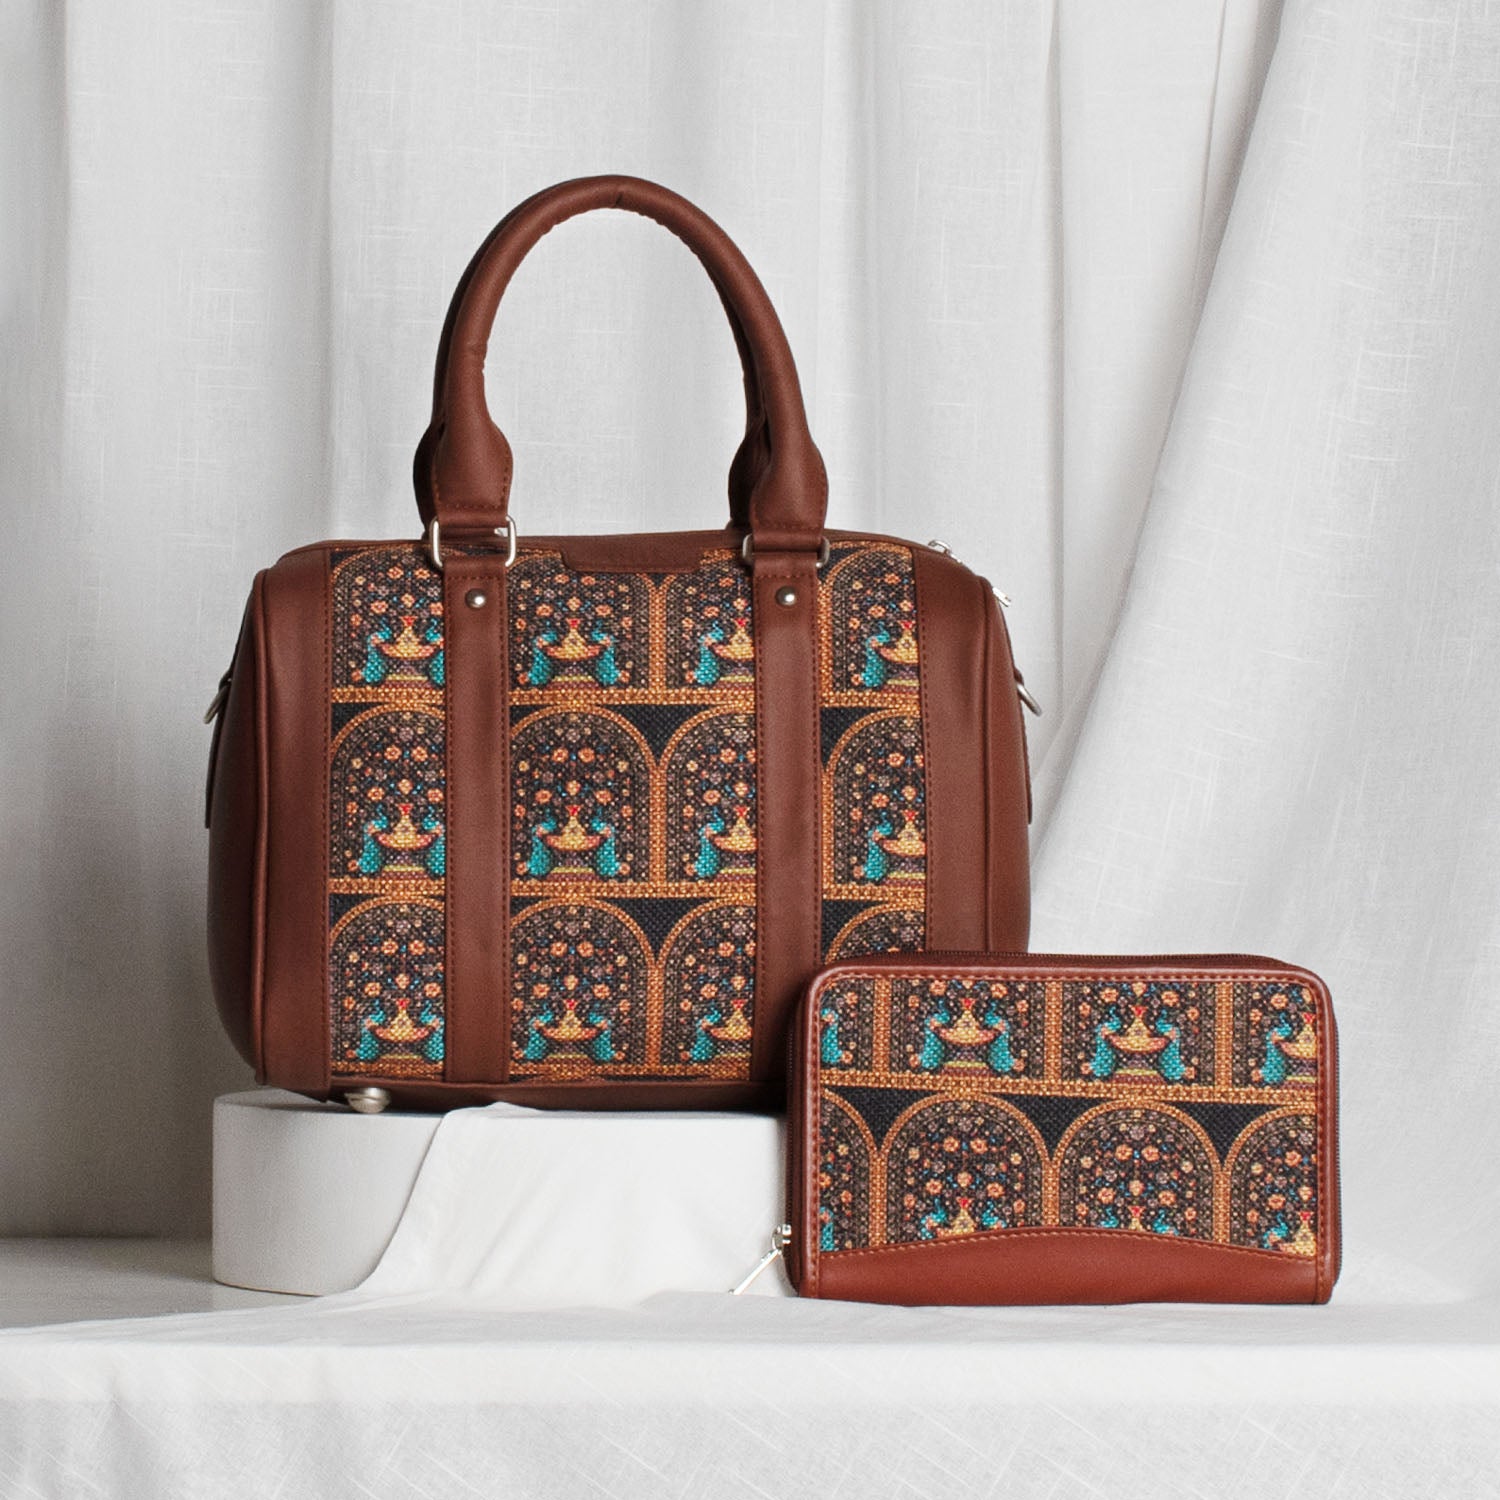 Royal Indian Peacock Motif - Handbag & Chain Wallet Combo